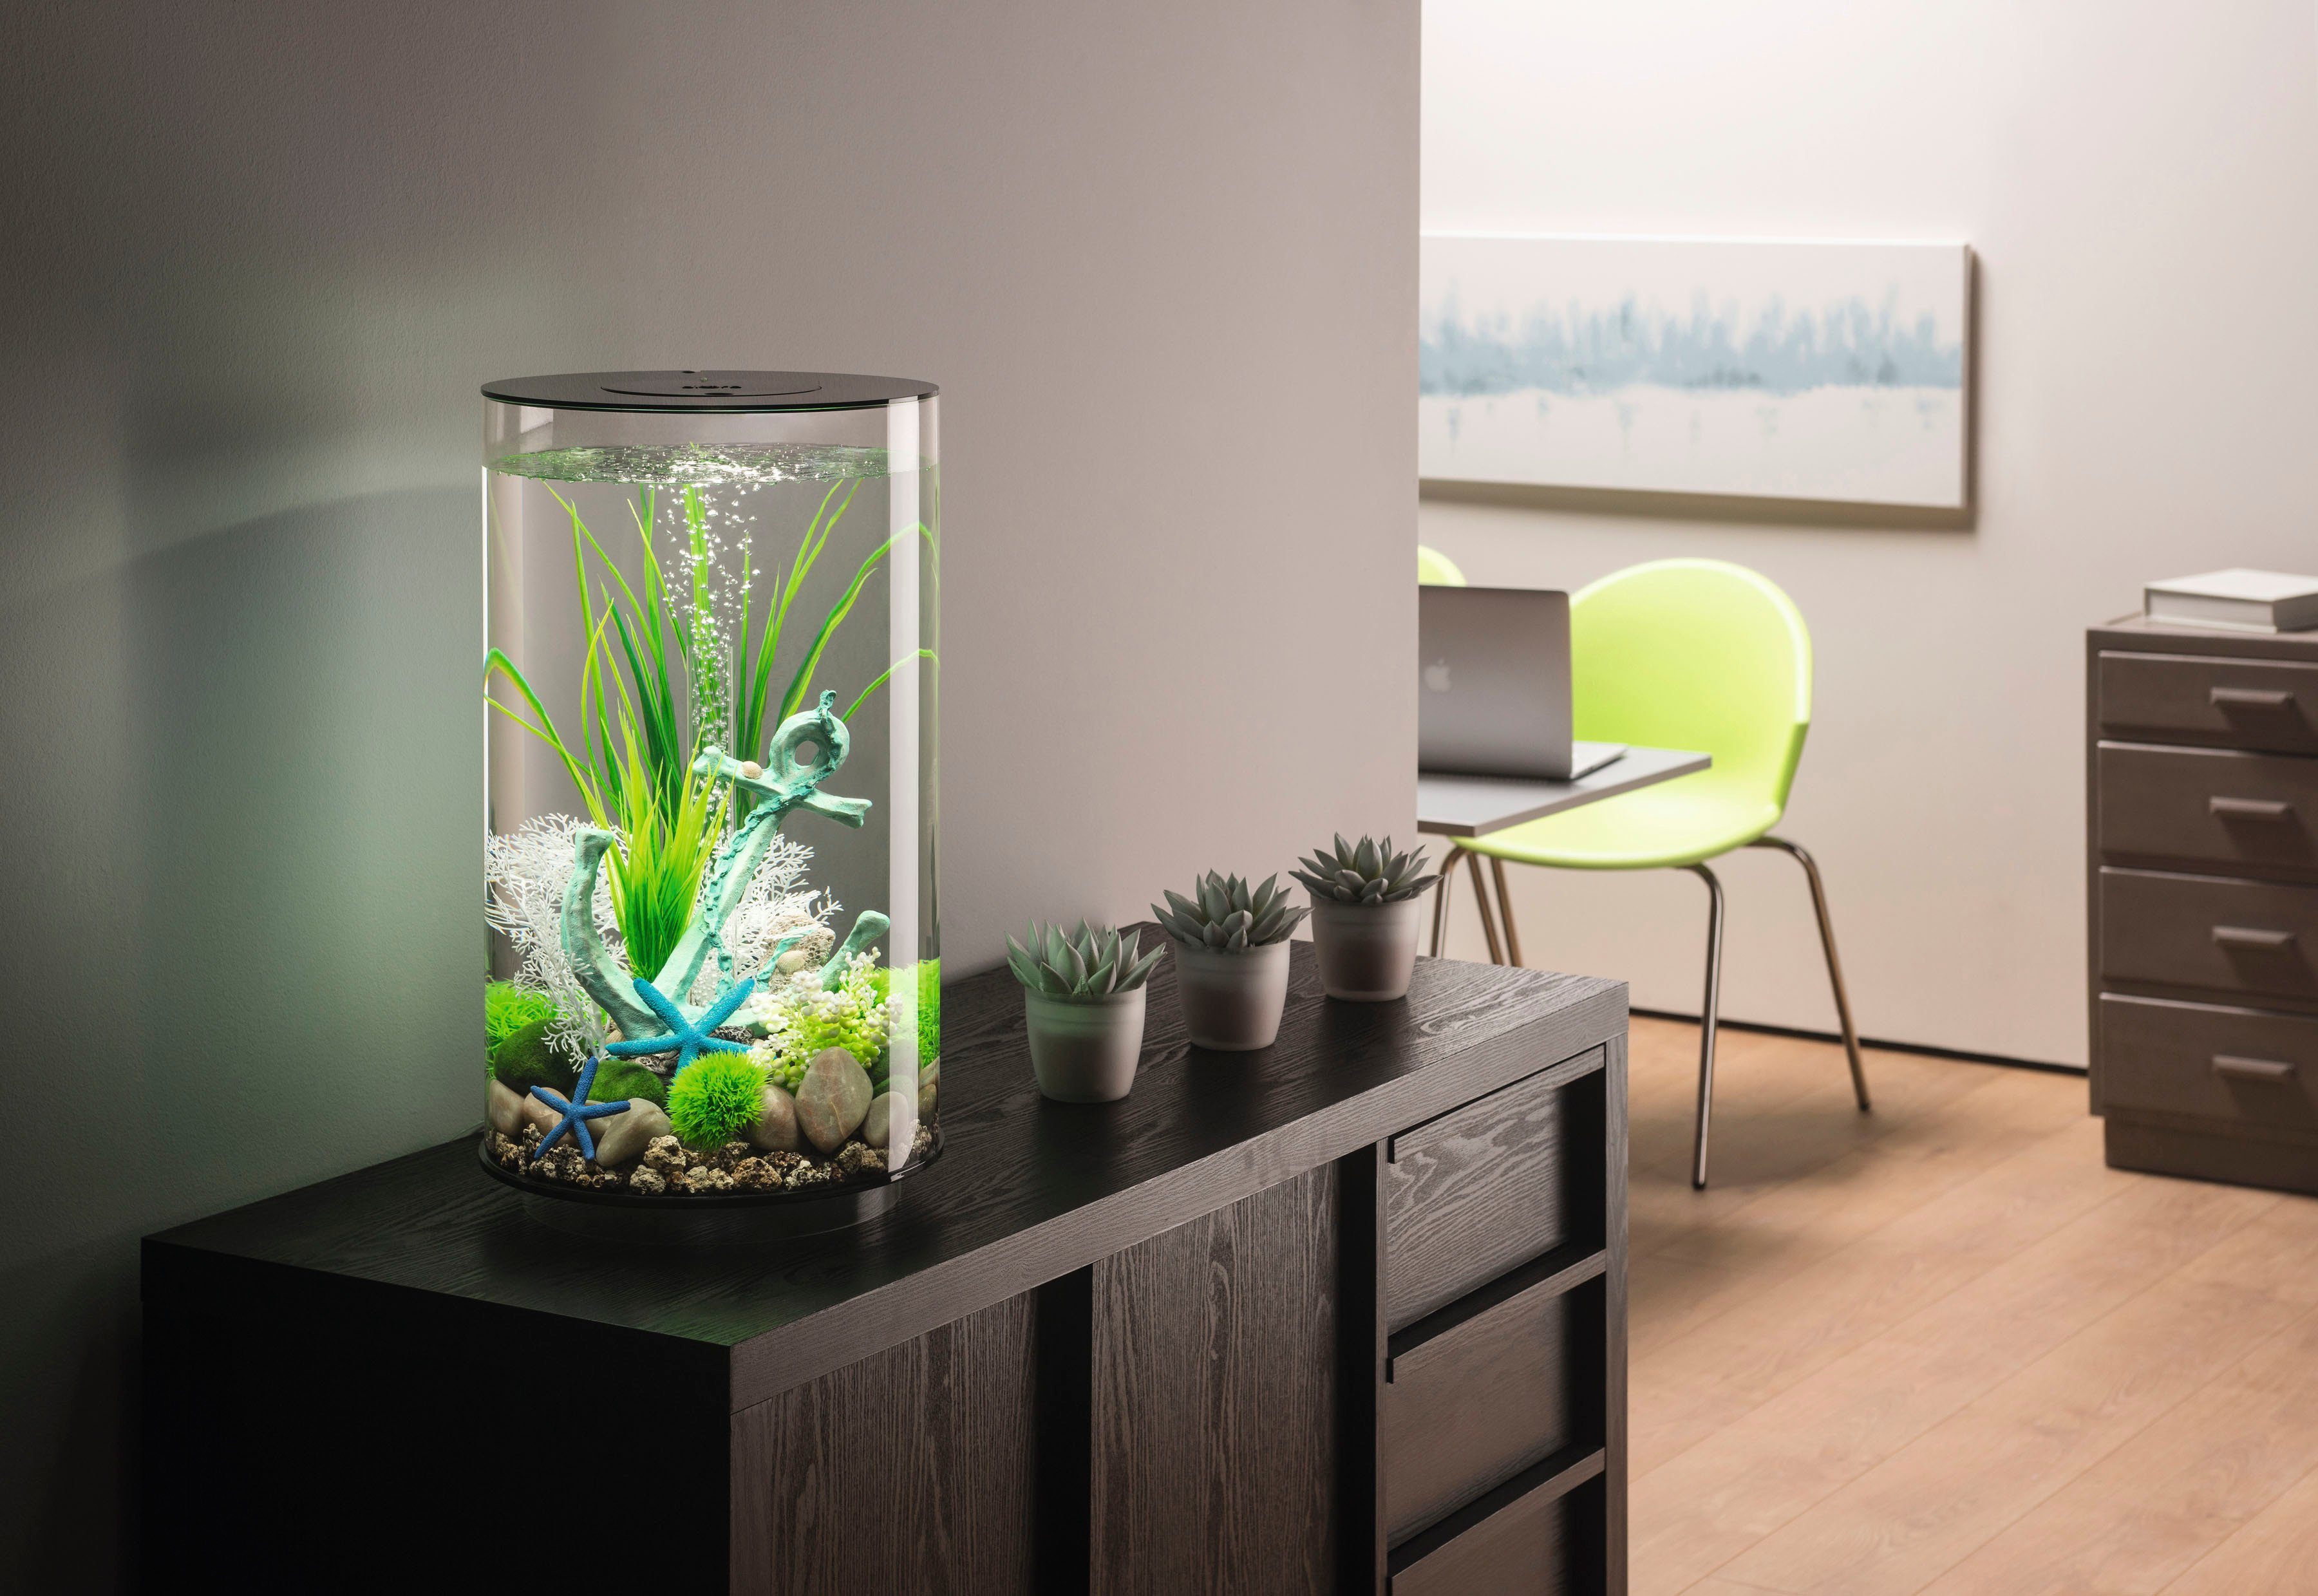 30 ØxH: Aquarium LED; 72066/67, 30 Liter, OASE by verschiedene TUBE 32,8x51,3 cm, biOrb Farben